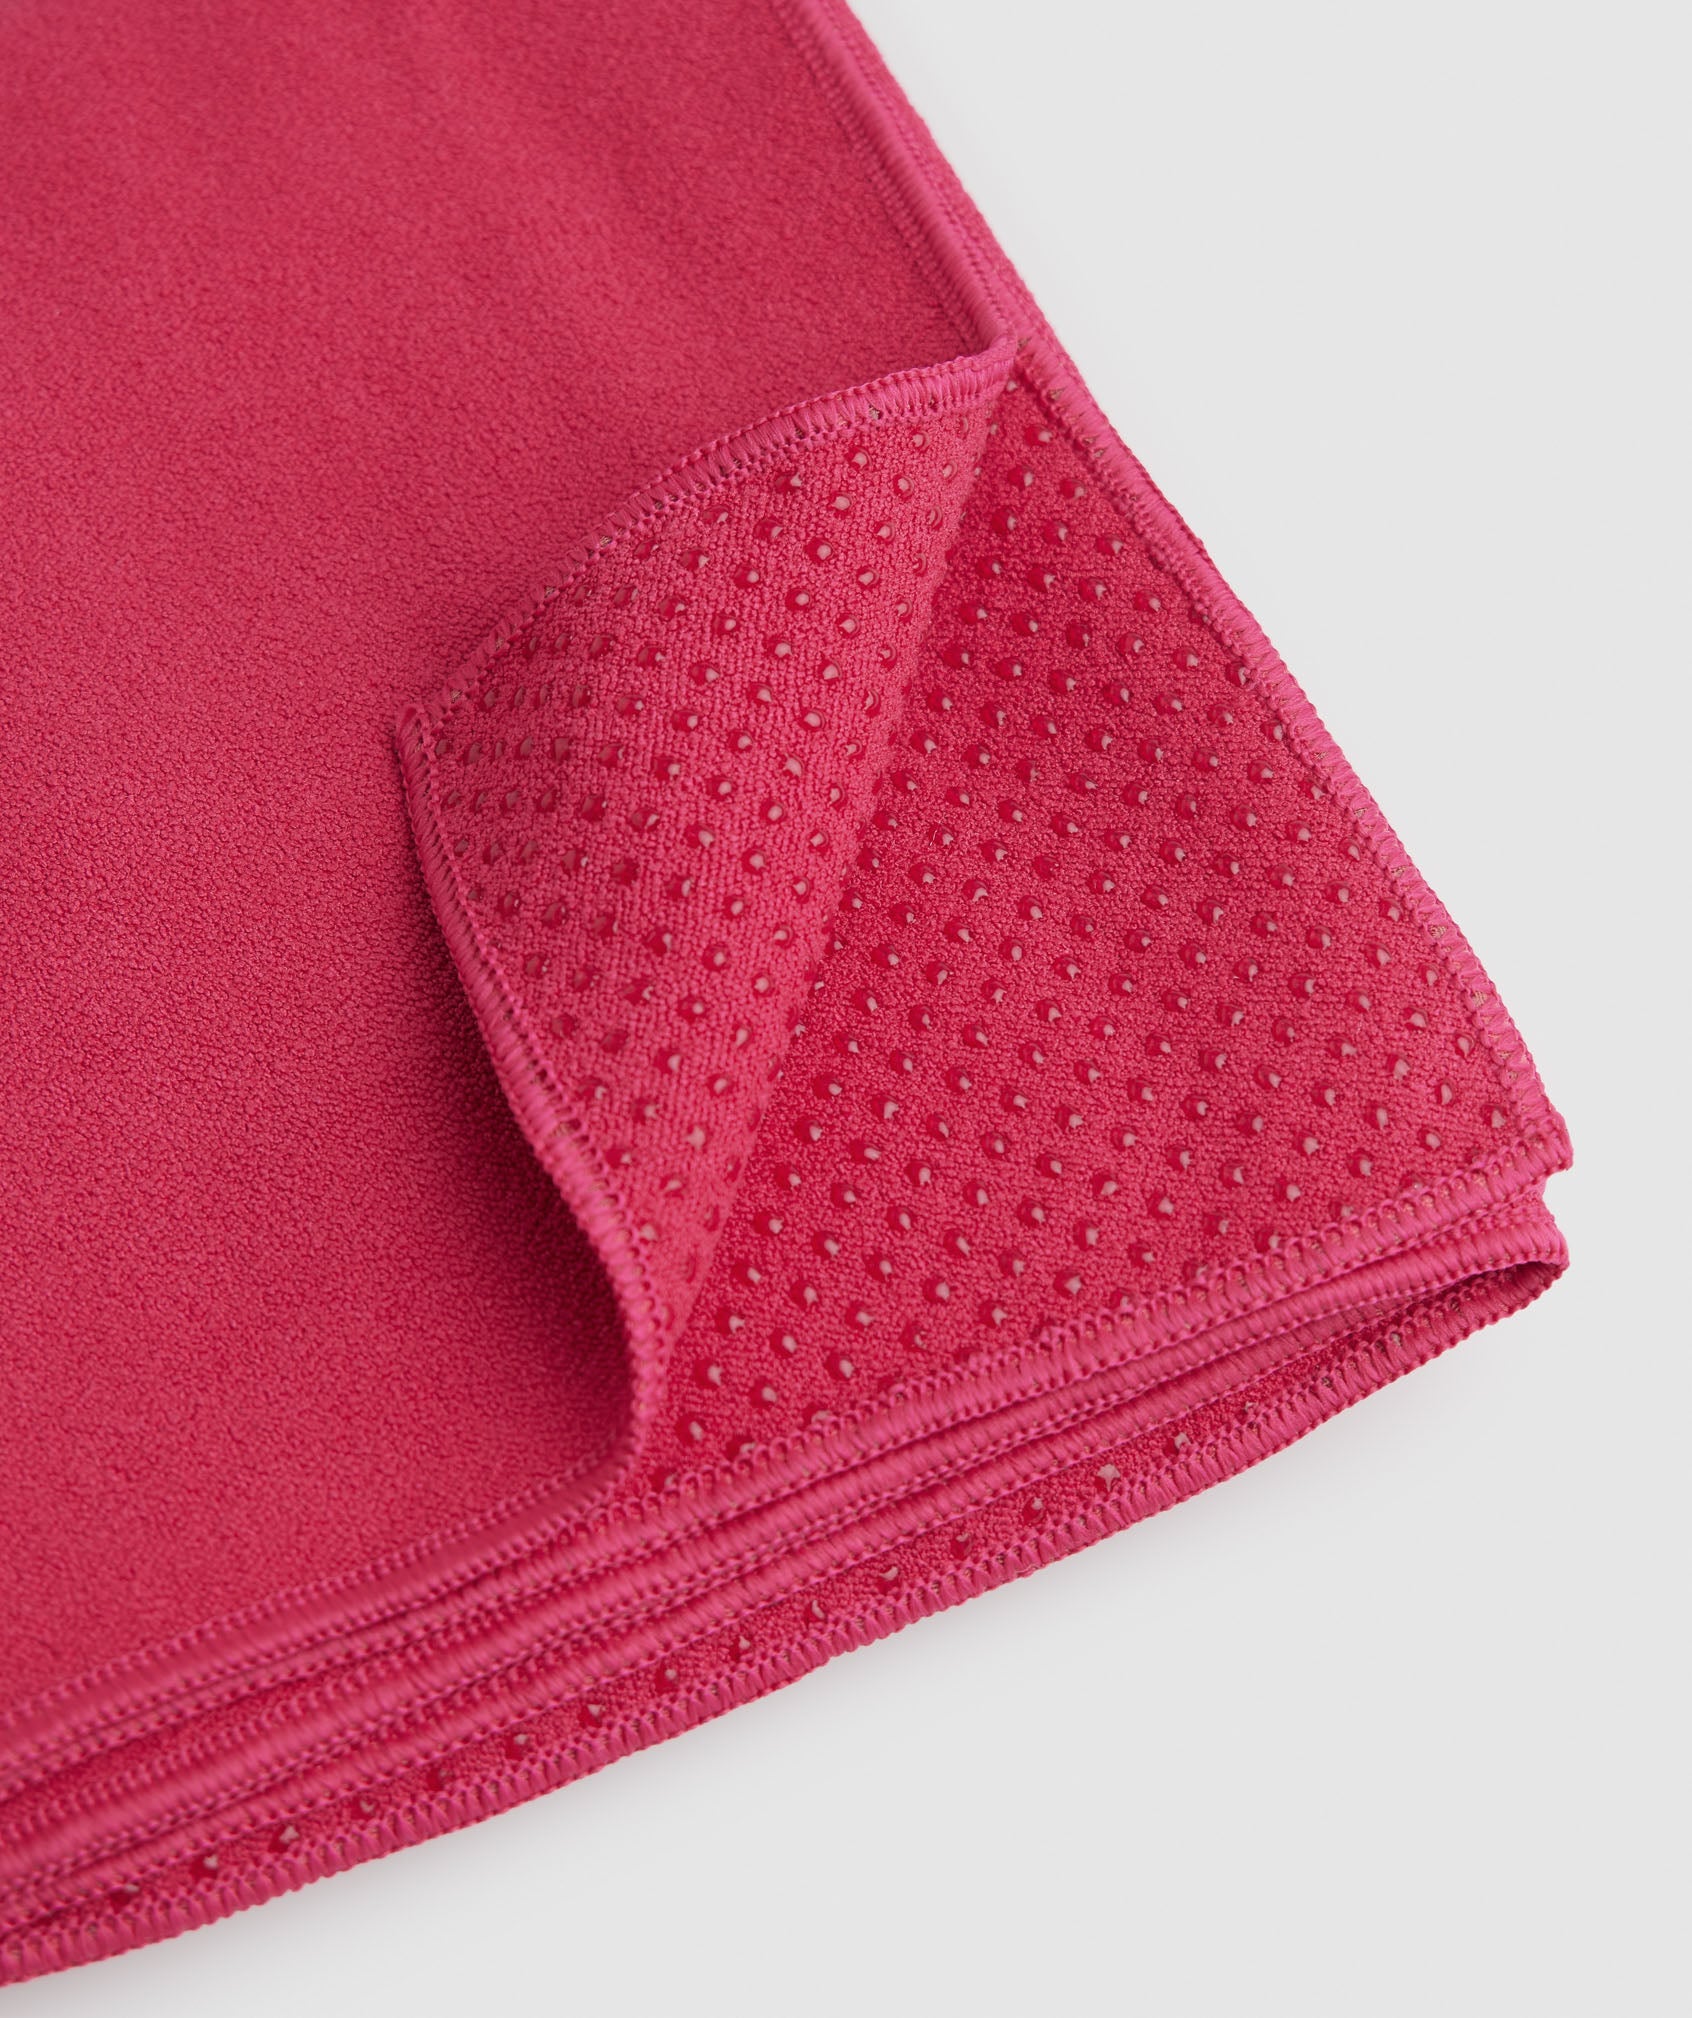 Studio Mat Towel in Hibiscus Pink - view 2